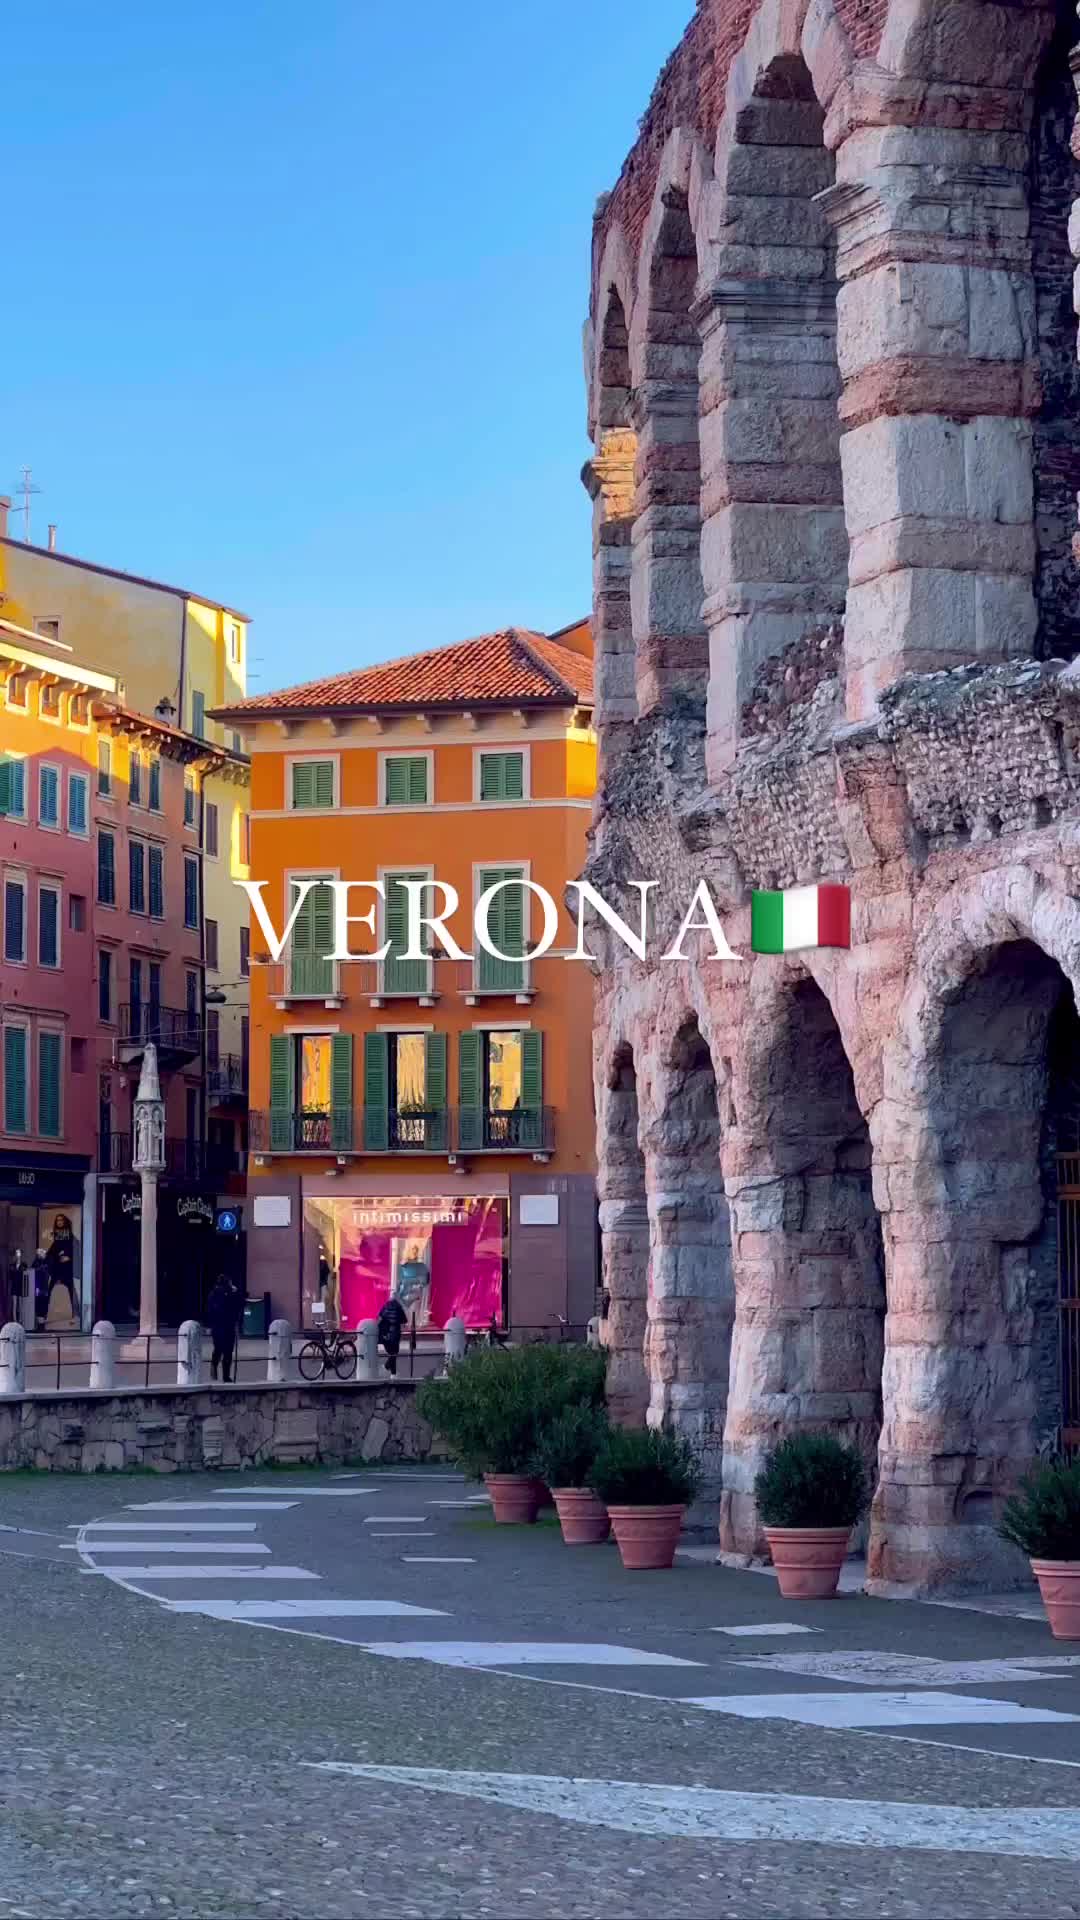 Verona, Italy: Explore the City of Romeo & Juliet